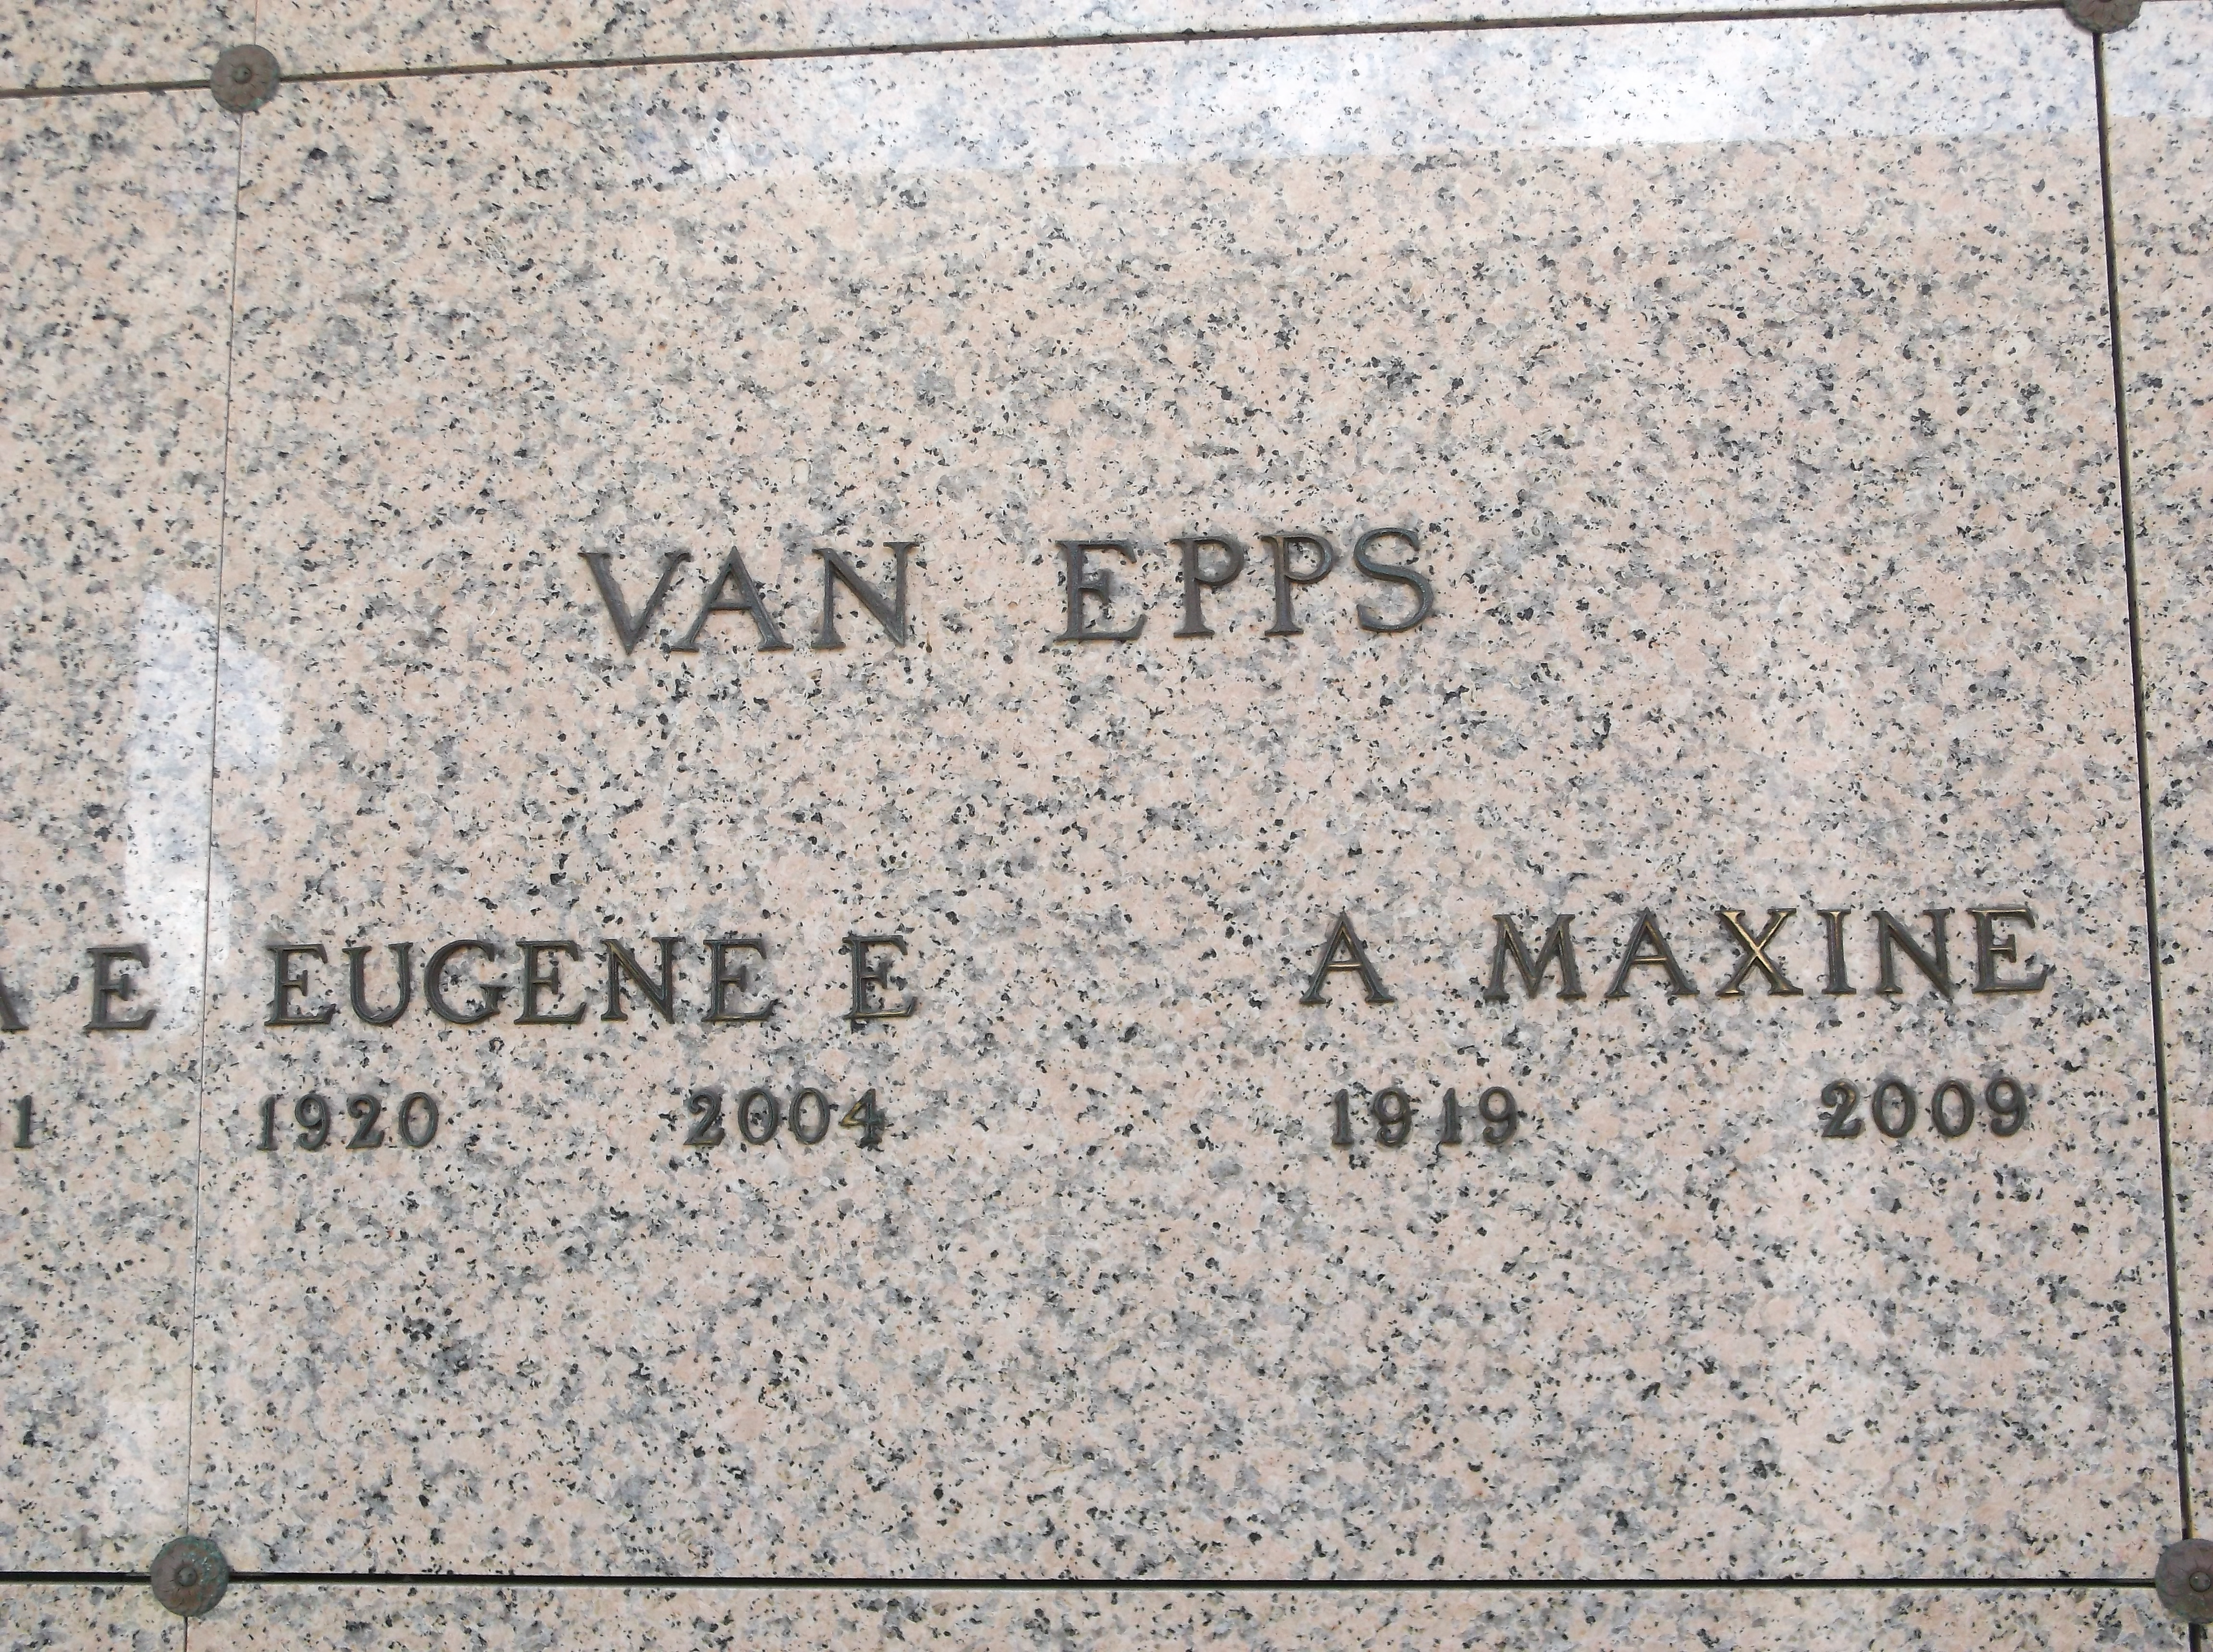 Eugene E Van Epps